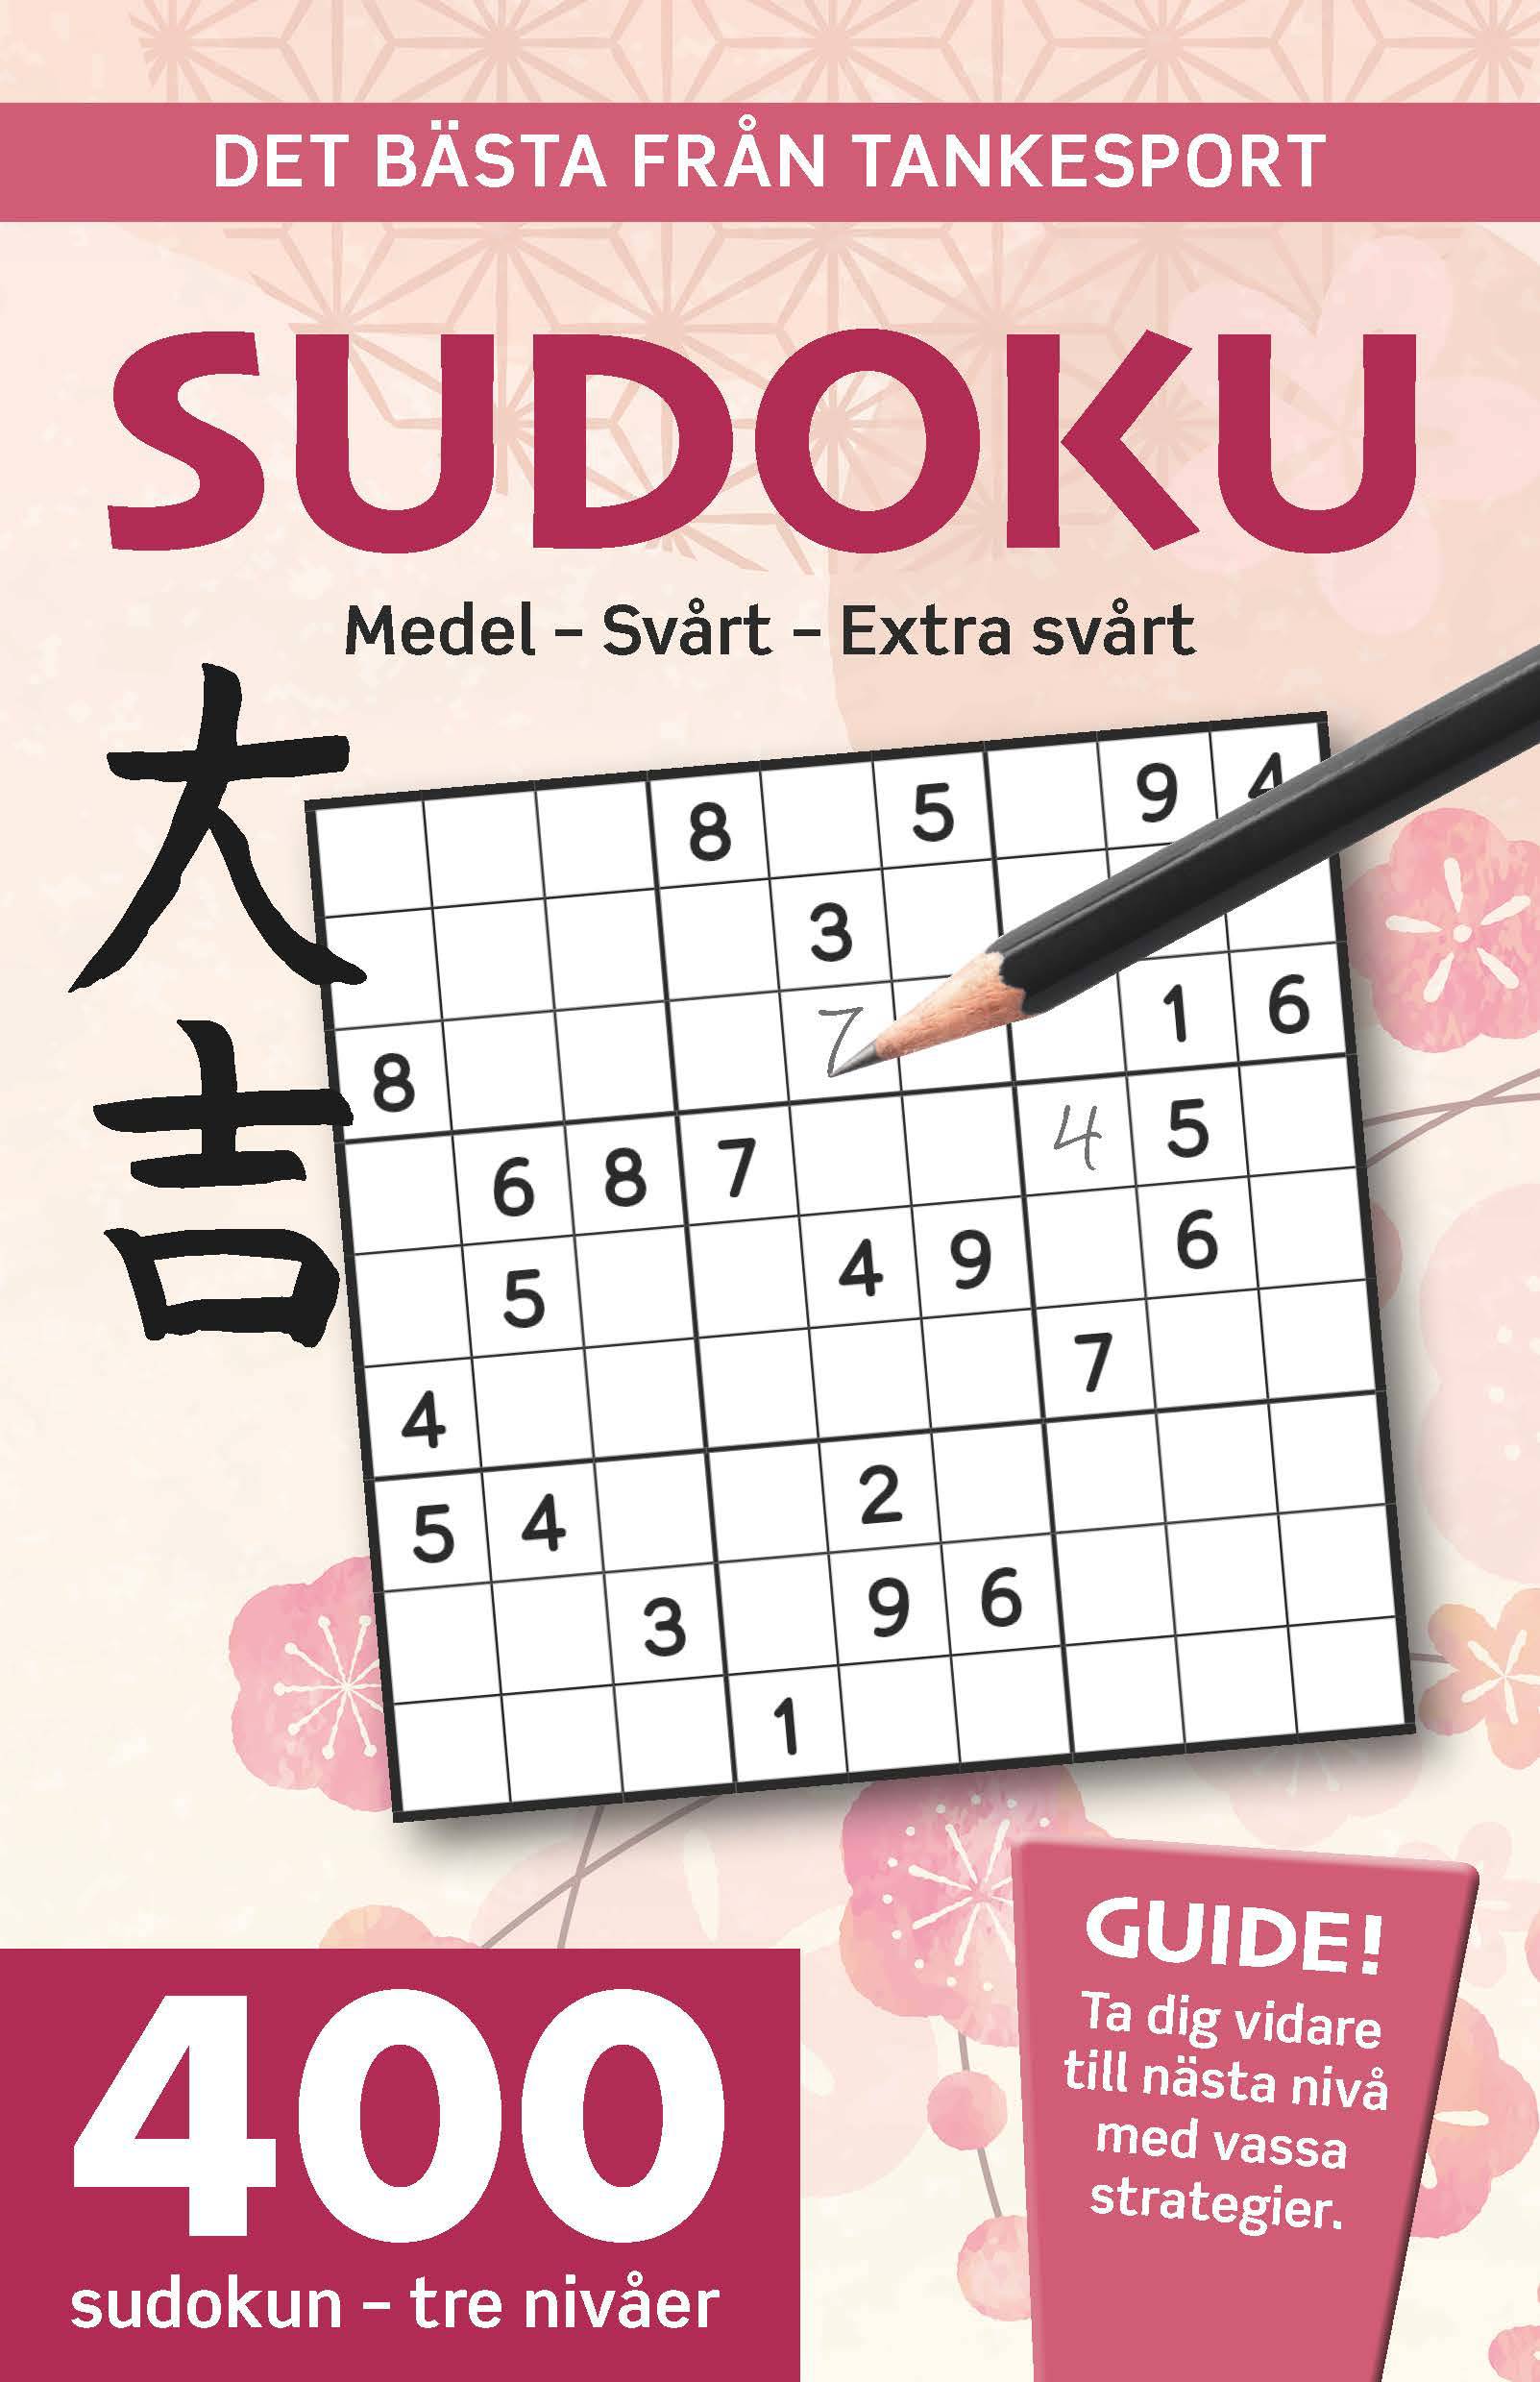 Sudoku : medel, svårt, extra svårt, det bästa från Tankesport